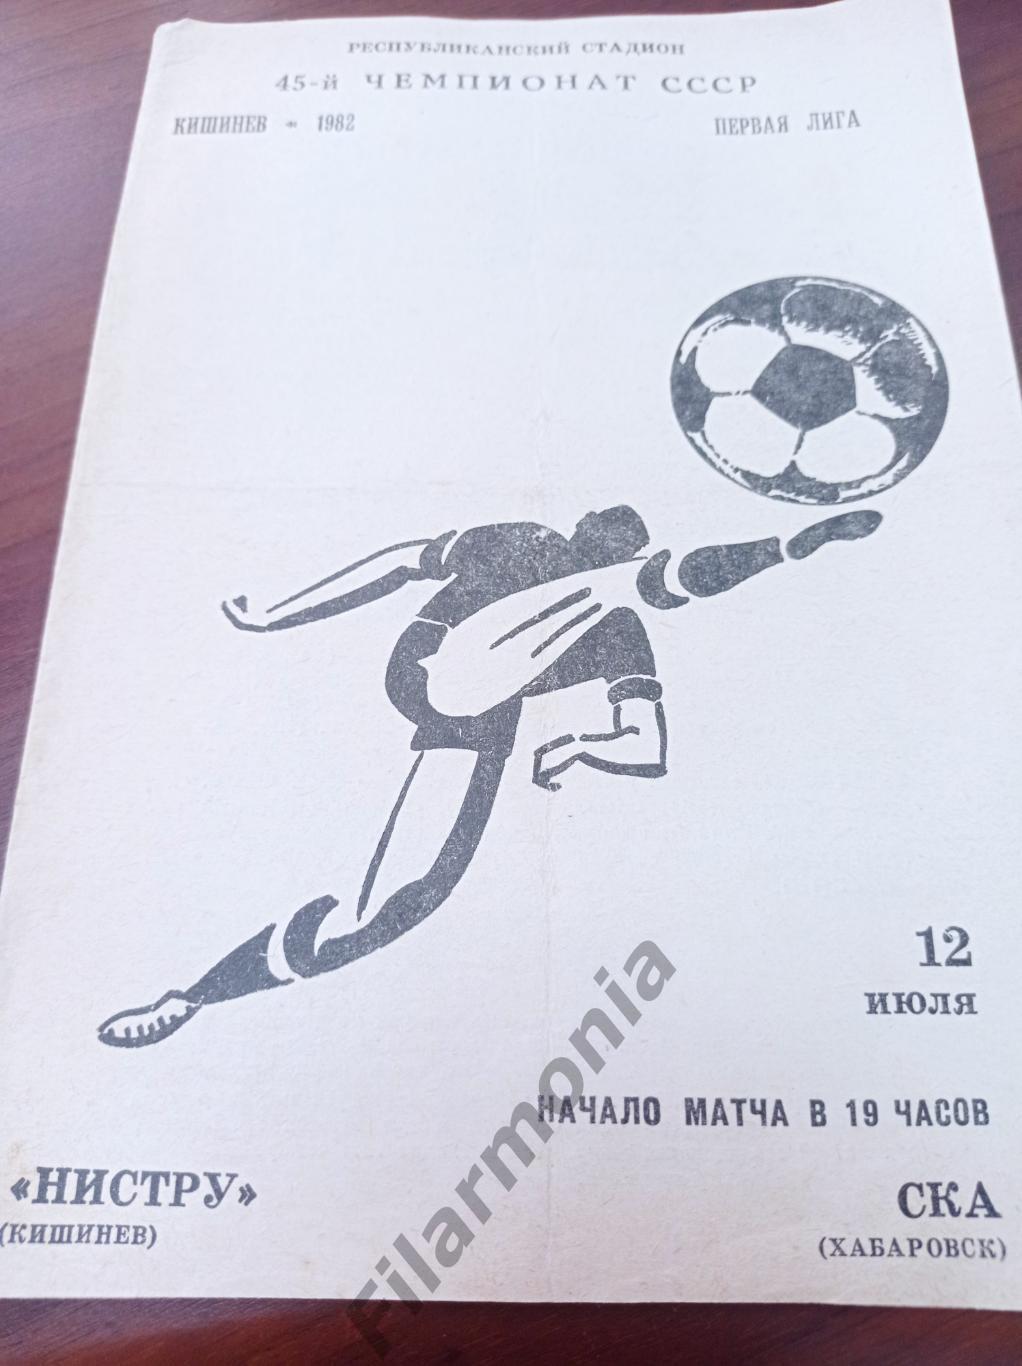 1982 Нистру Кишинев - СКА Хабаровск, разновидность обложки